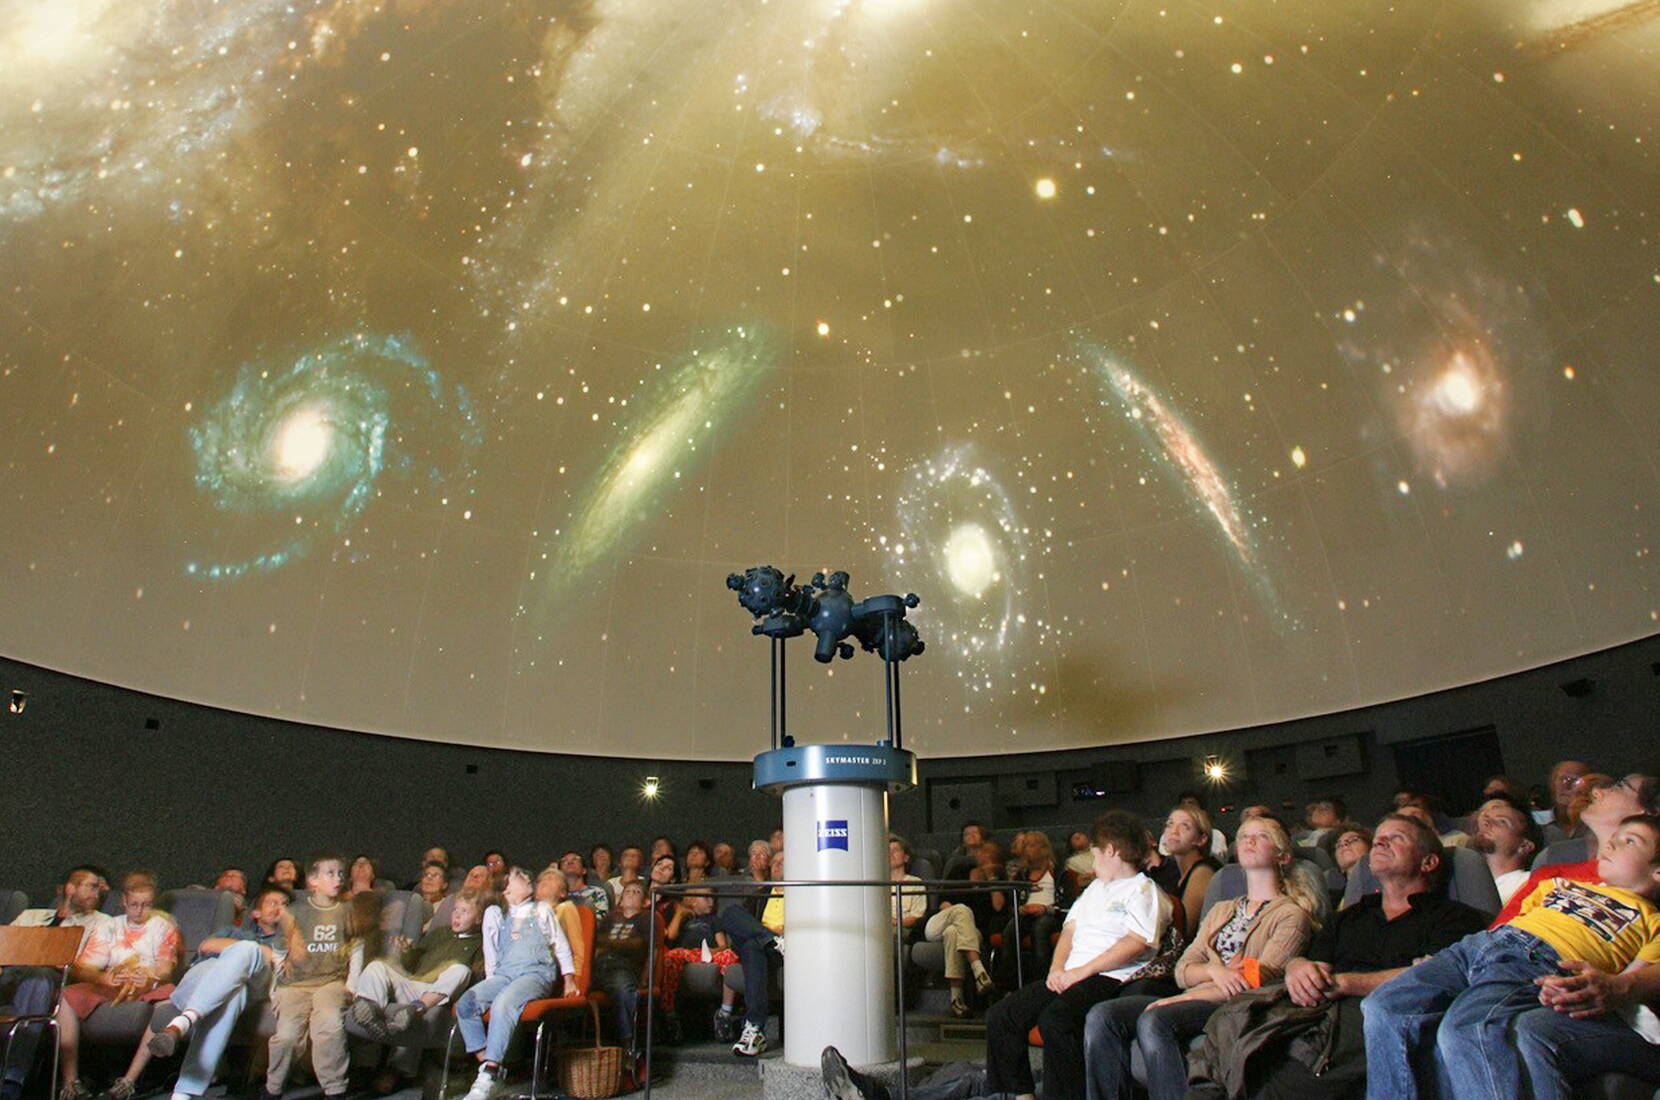 Familienausflug – Lust auf einen Ausflug ins Weltall? Unter der Kuppel des Bodensee Planetariums laden bequeme Sessel zu einer virtuellen Reise durch den Nachthimmel ein.